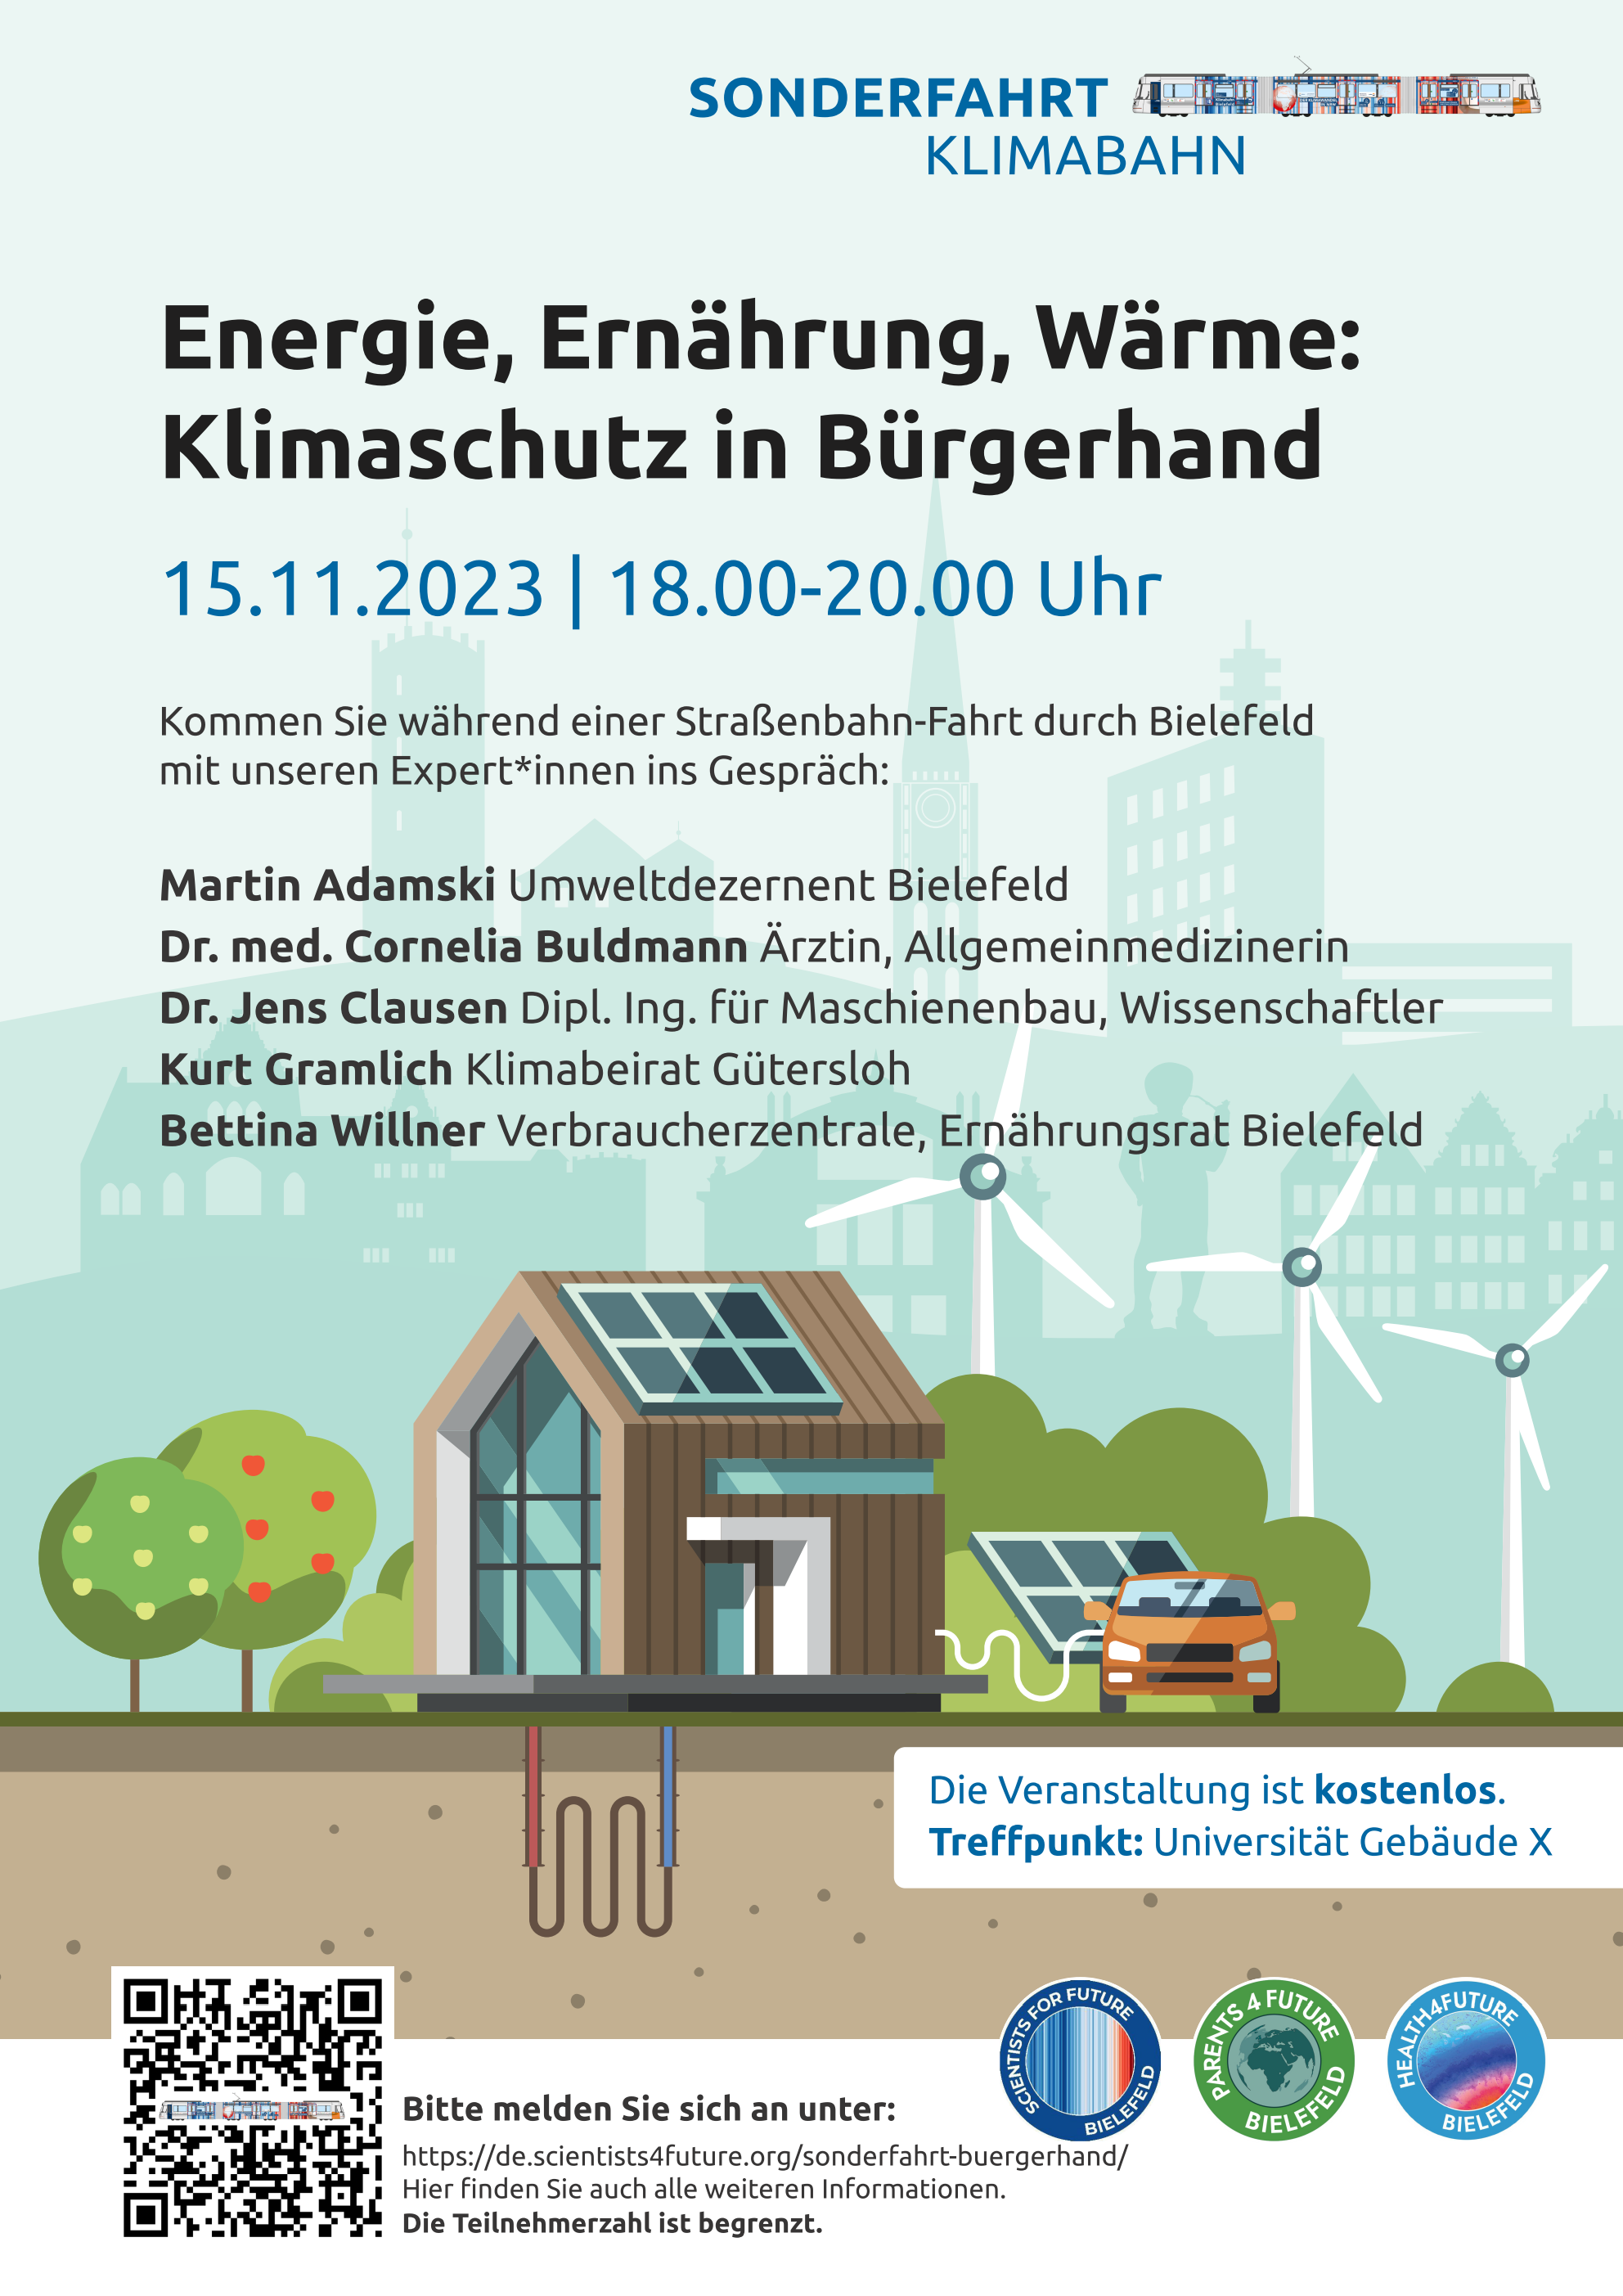 Sonderfahrt der Klimabahn Bielefeld am 15.11.2023